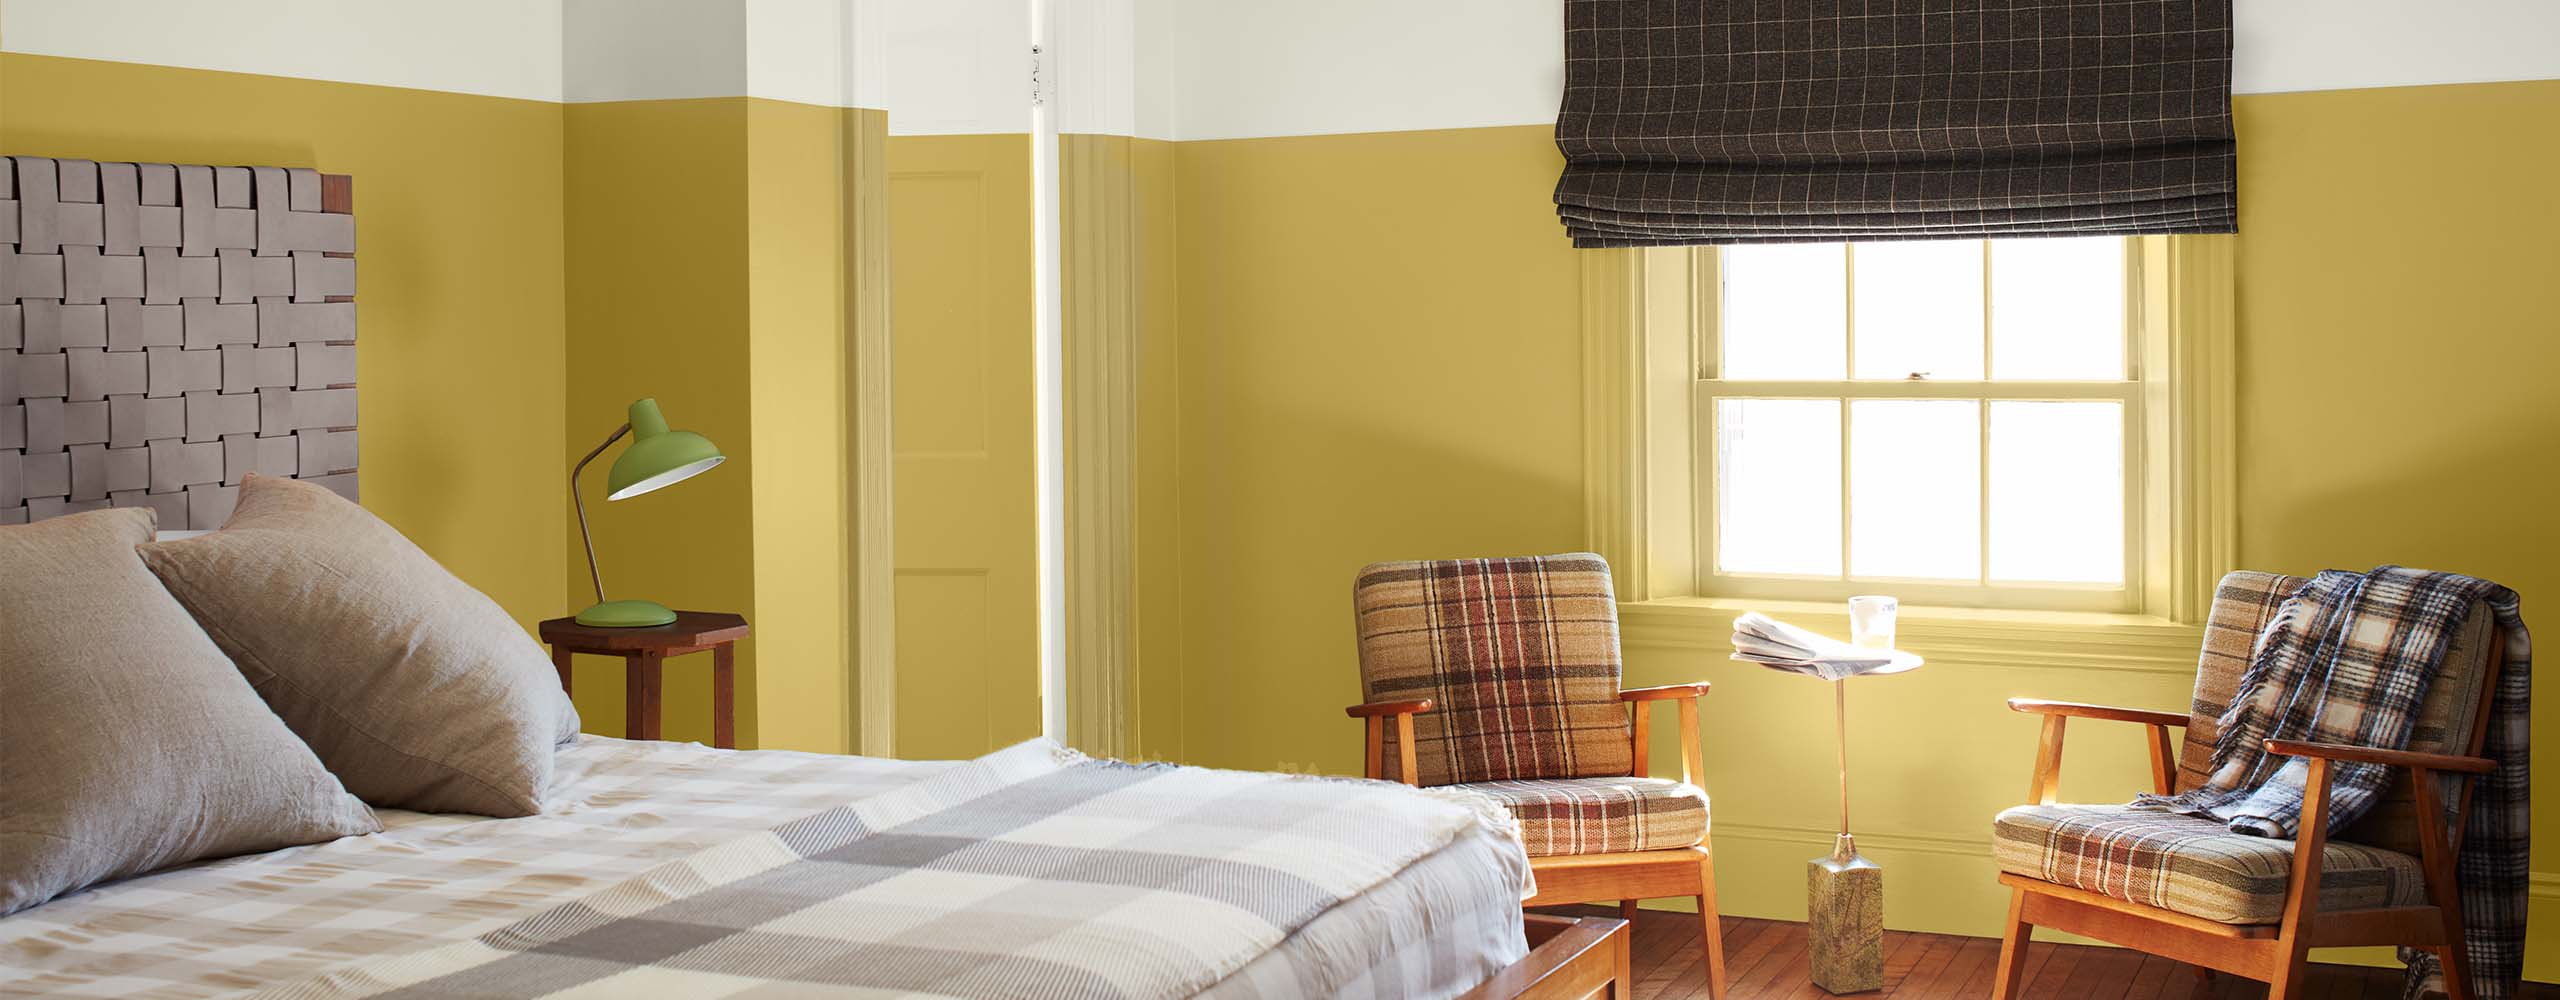 Chambre à coucher lumineuse en deux tons avec la partie supérieure des murs, le haut de la porte et le plafond en blanc, et la partie inférieure des murs et de la porte en jaune, des articles de literie à carreaux marron clair et deux fauteuils en tissu écossais.